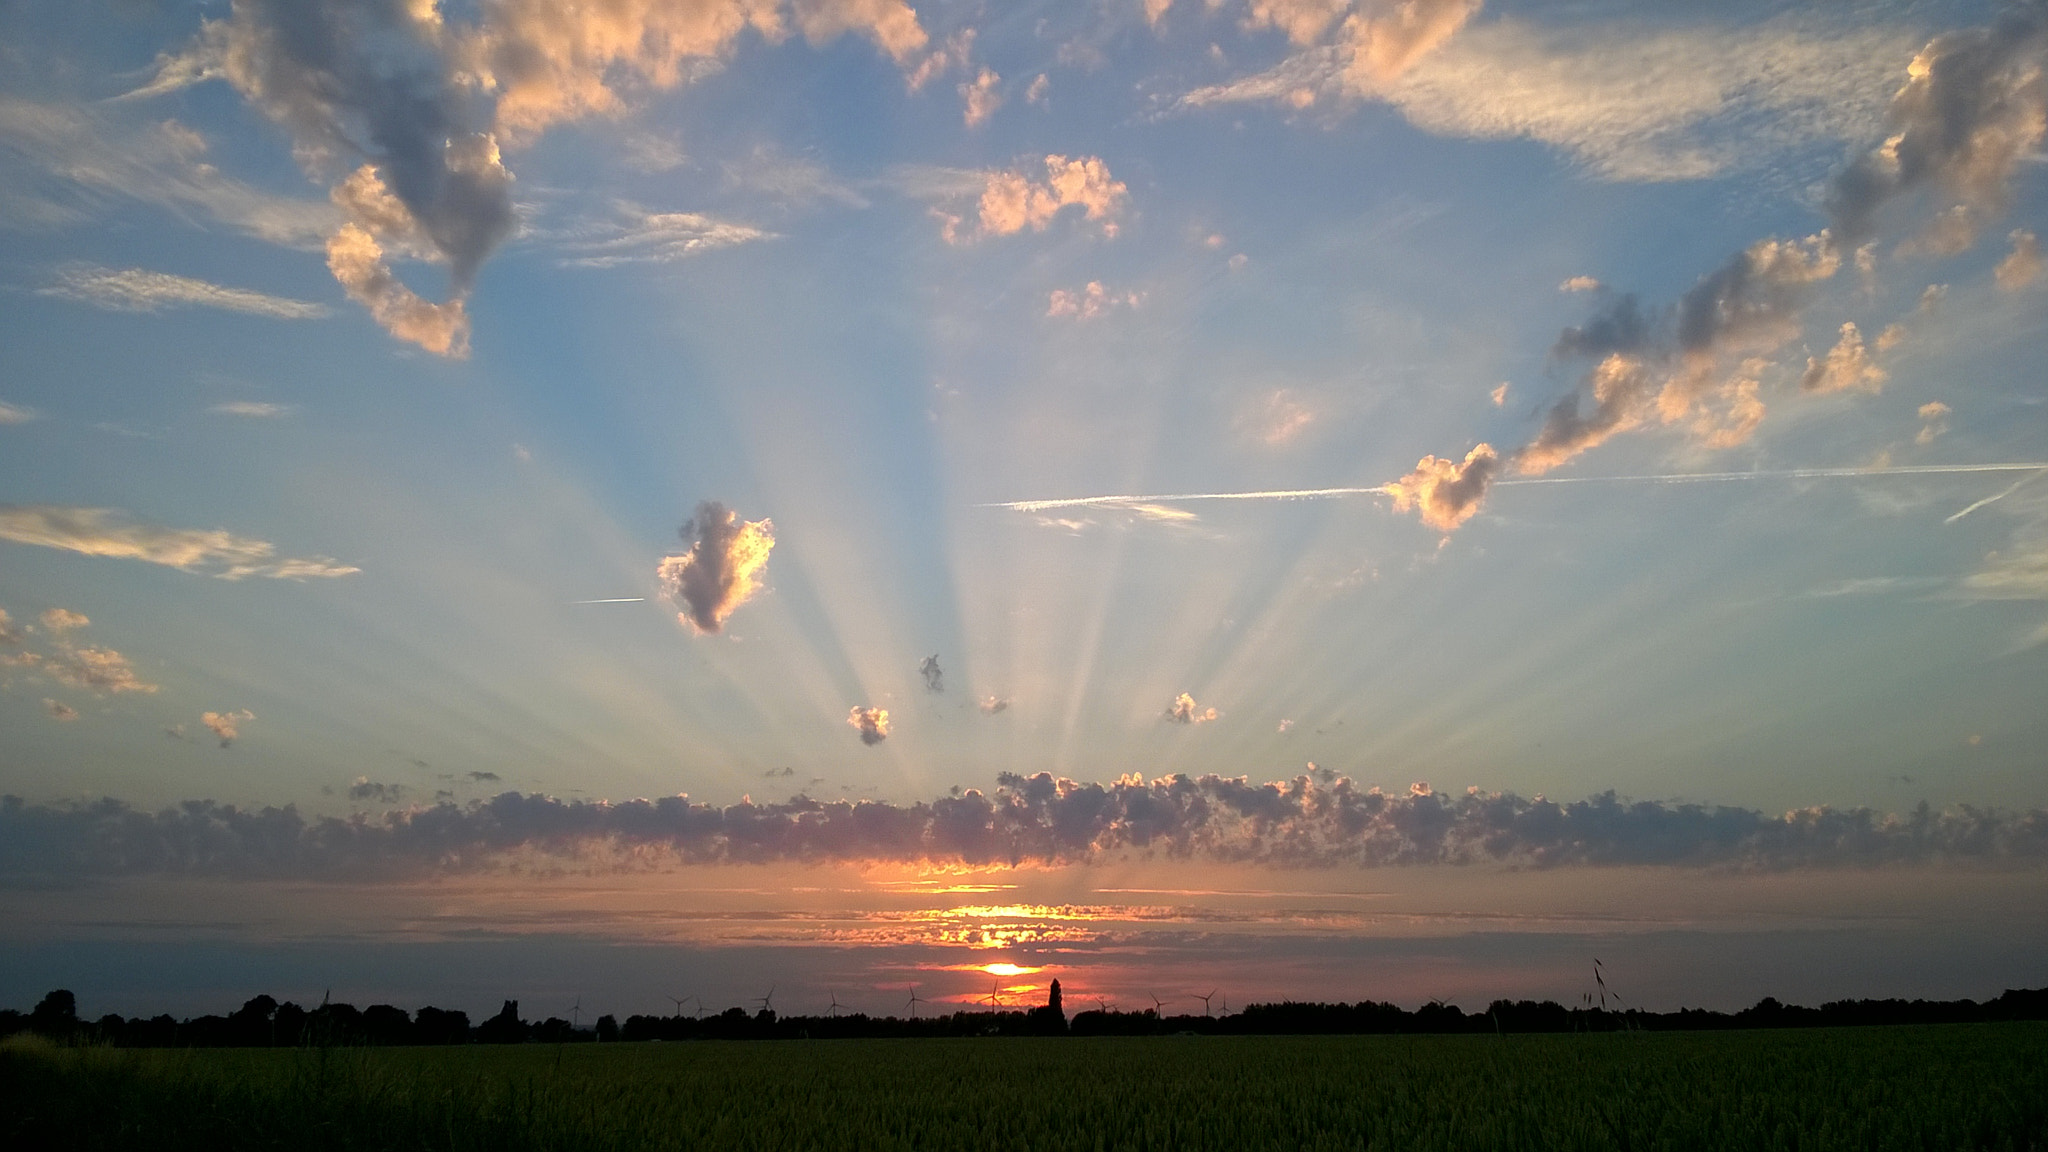 Nokia Lumia 735 sample photo. Sunset photography